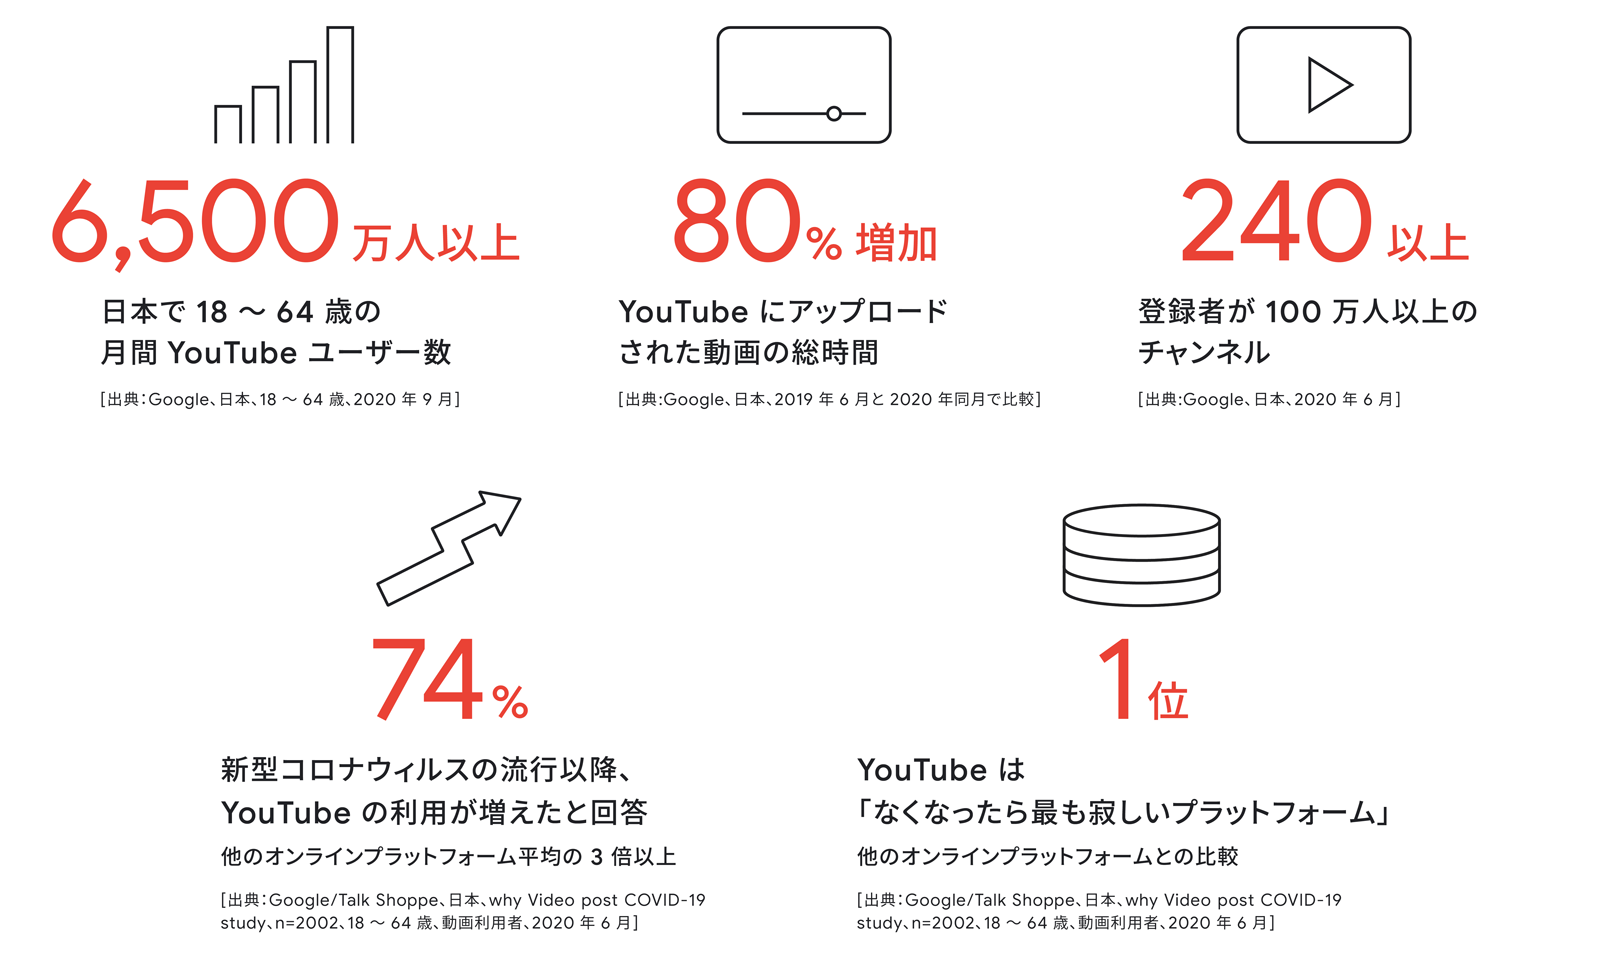 日本で18～64歳の月間Youtubeユーザー数：6500万人以上。YouTubeにアップロードされた動画の総時間：80%増加。登録者が100万人以上のチャンネル：240以上。新型コロナウイルスの流行以降、YouTubeの利用が増えたと回答：74%。YouTubeは「なくなったらもっとも寂しいプラットフォーム」：1位